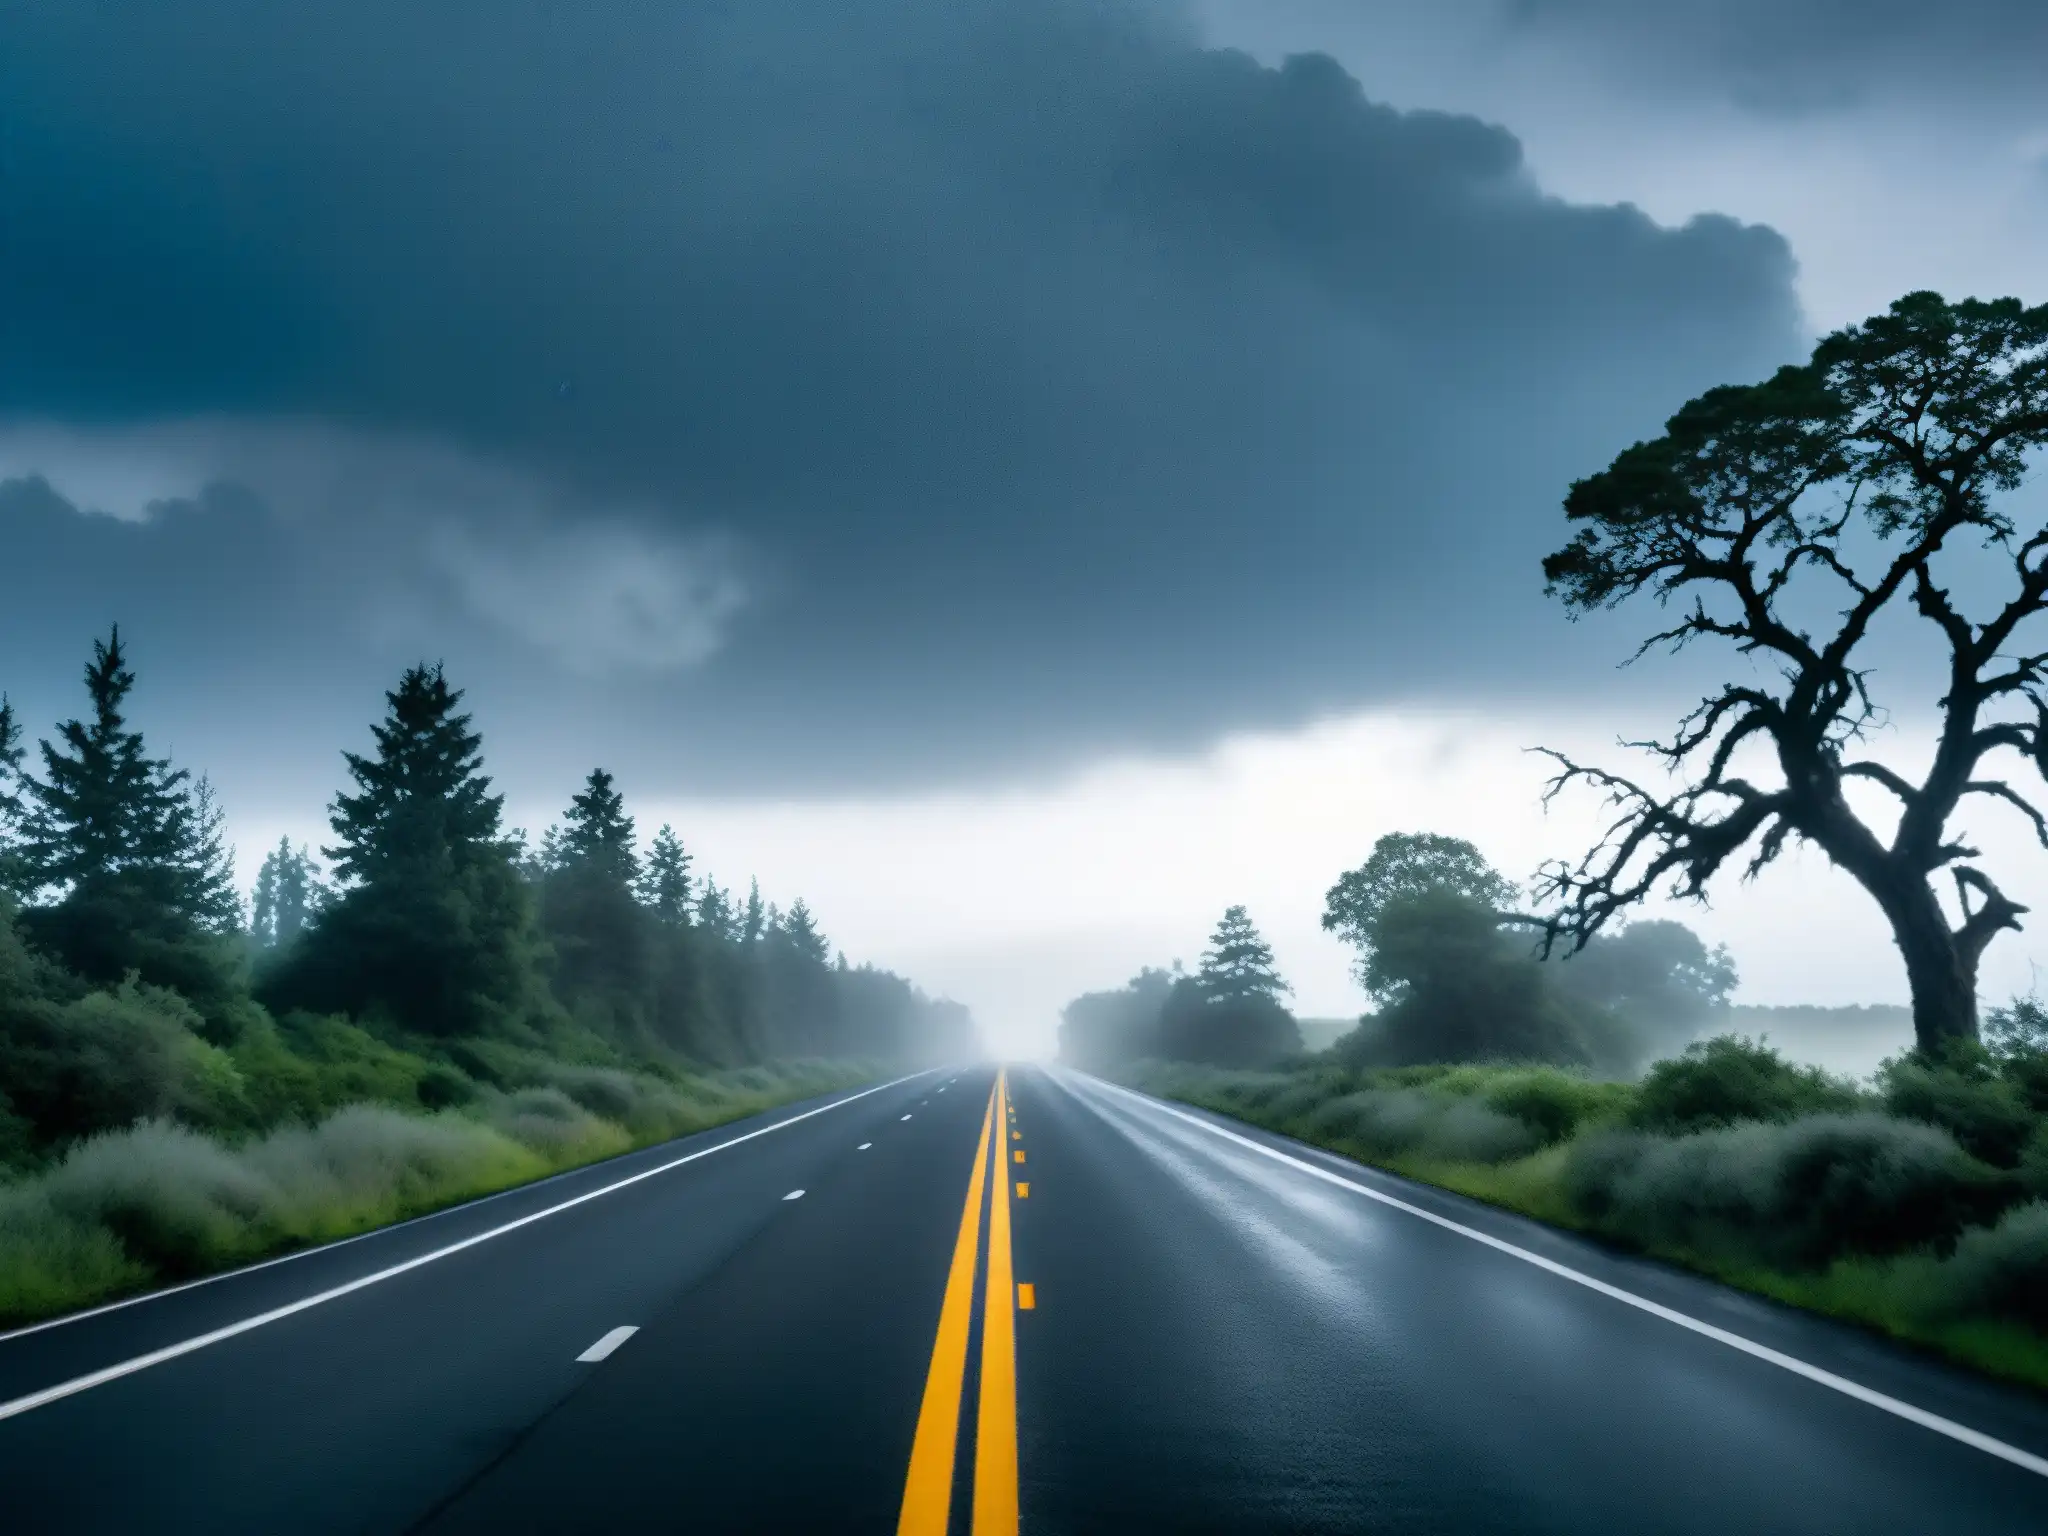 Un camino solitario y desolado, envuelto en niebla espesa y con árboles retorcidos